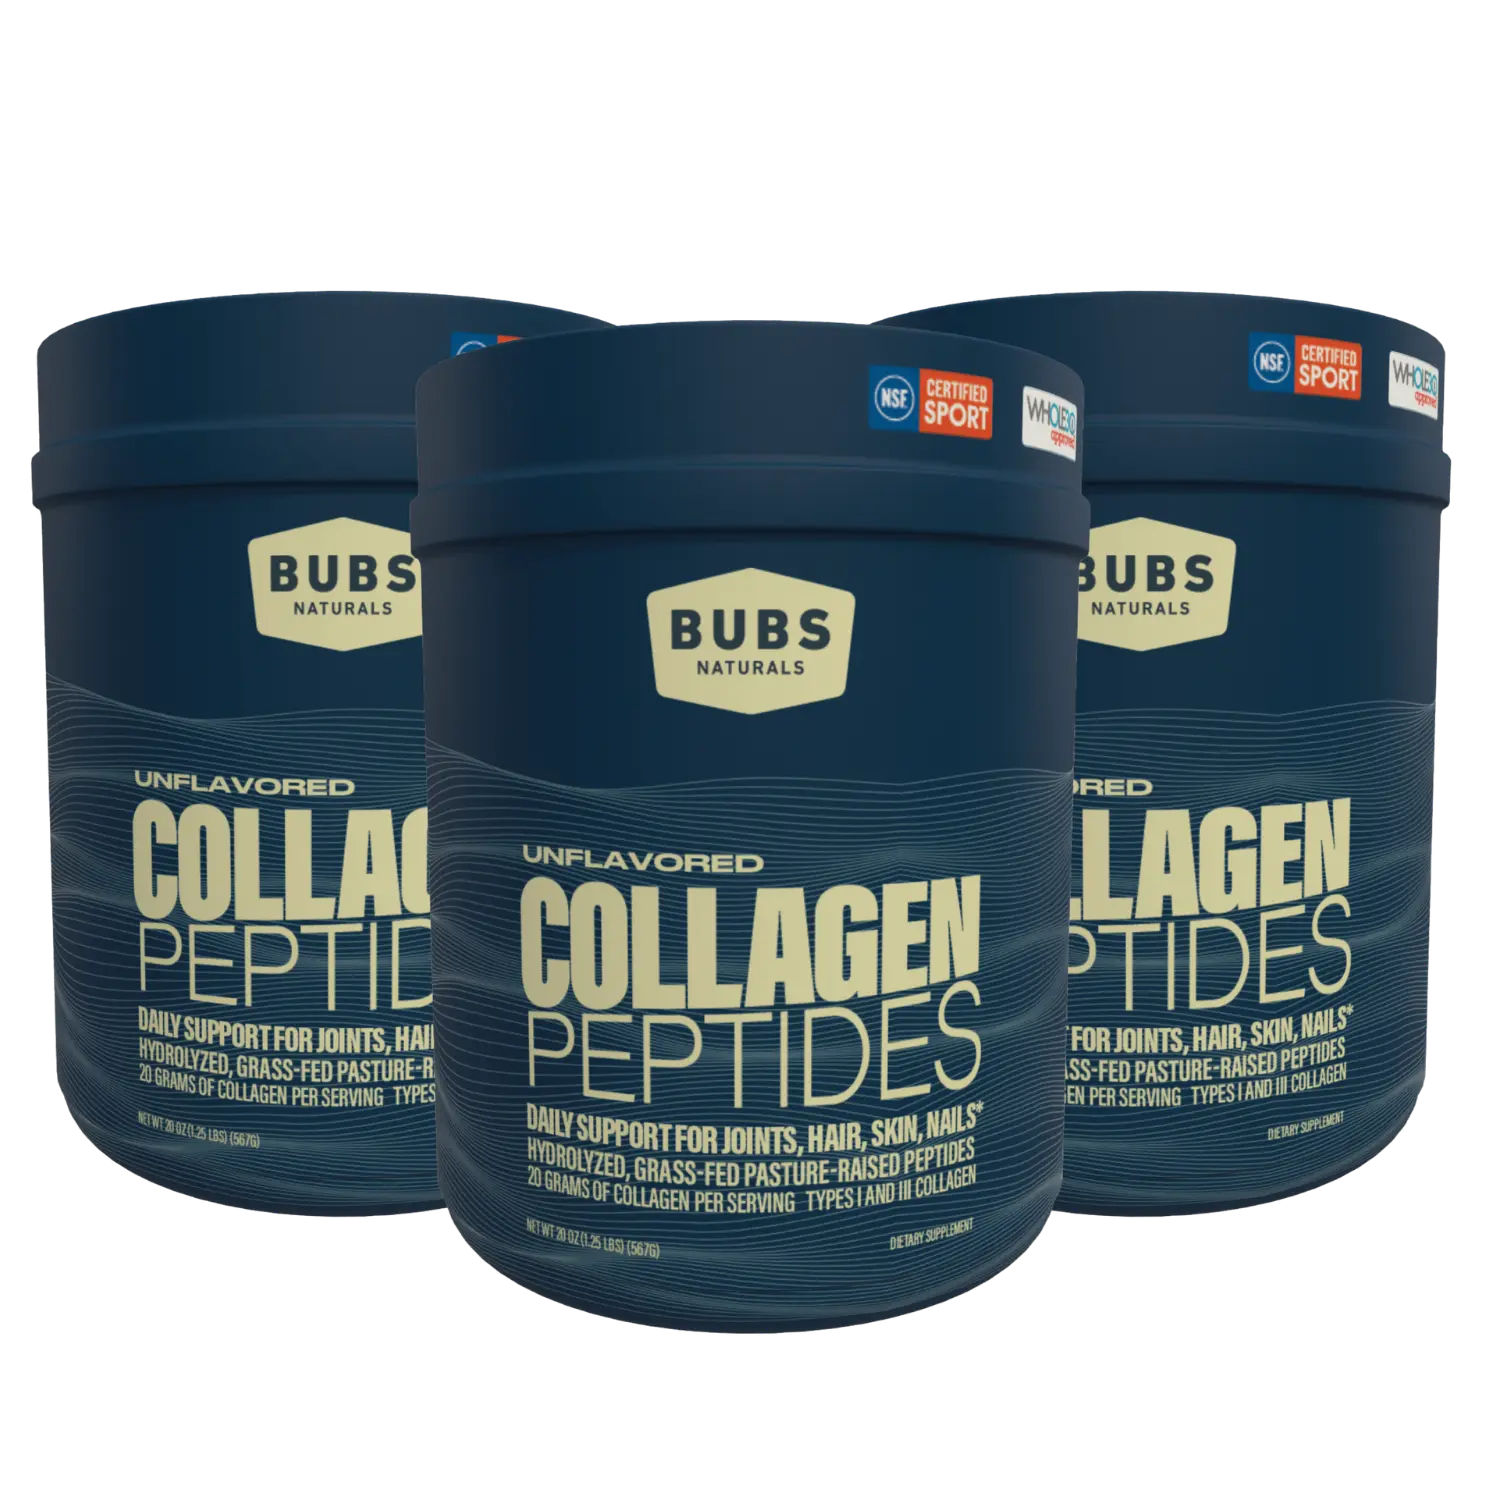 BUBS Naturals Unflavored Collagen Peptides, 20oz tub, 3 tub bundle